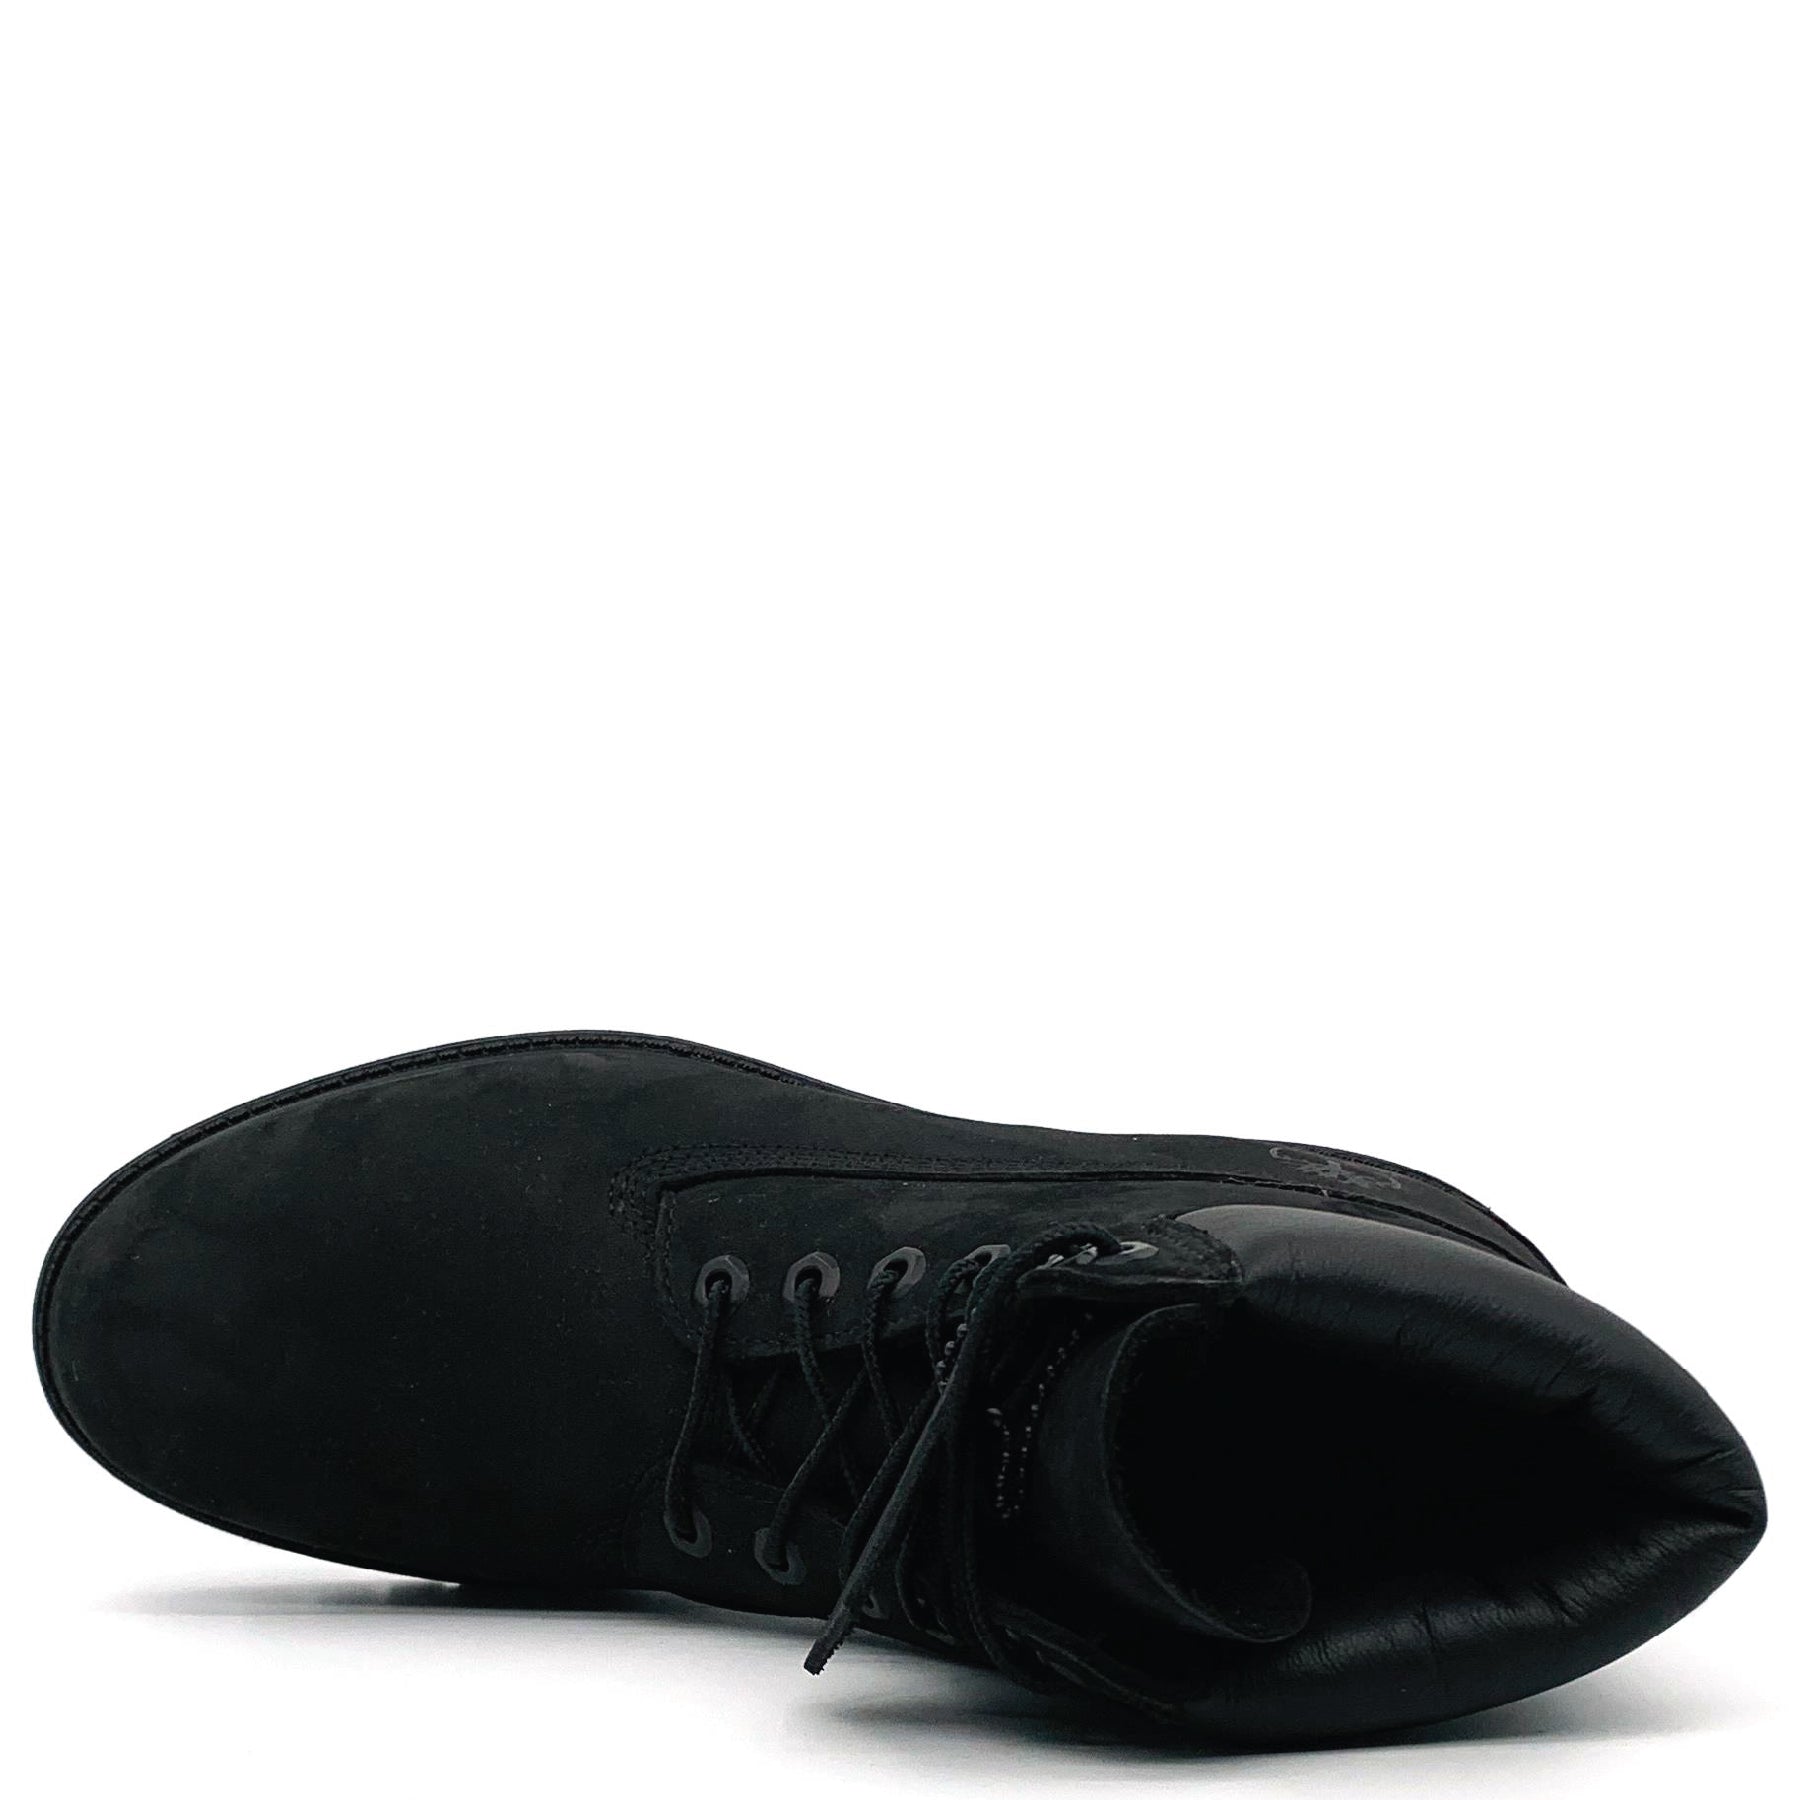 6" Premium Boot Black